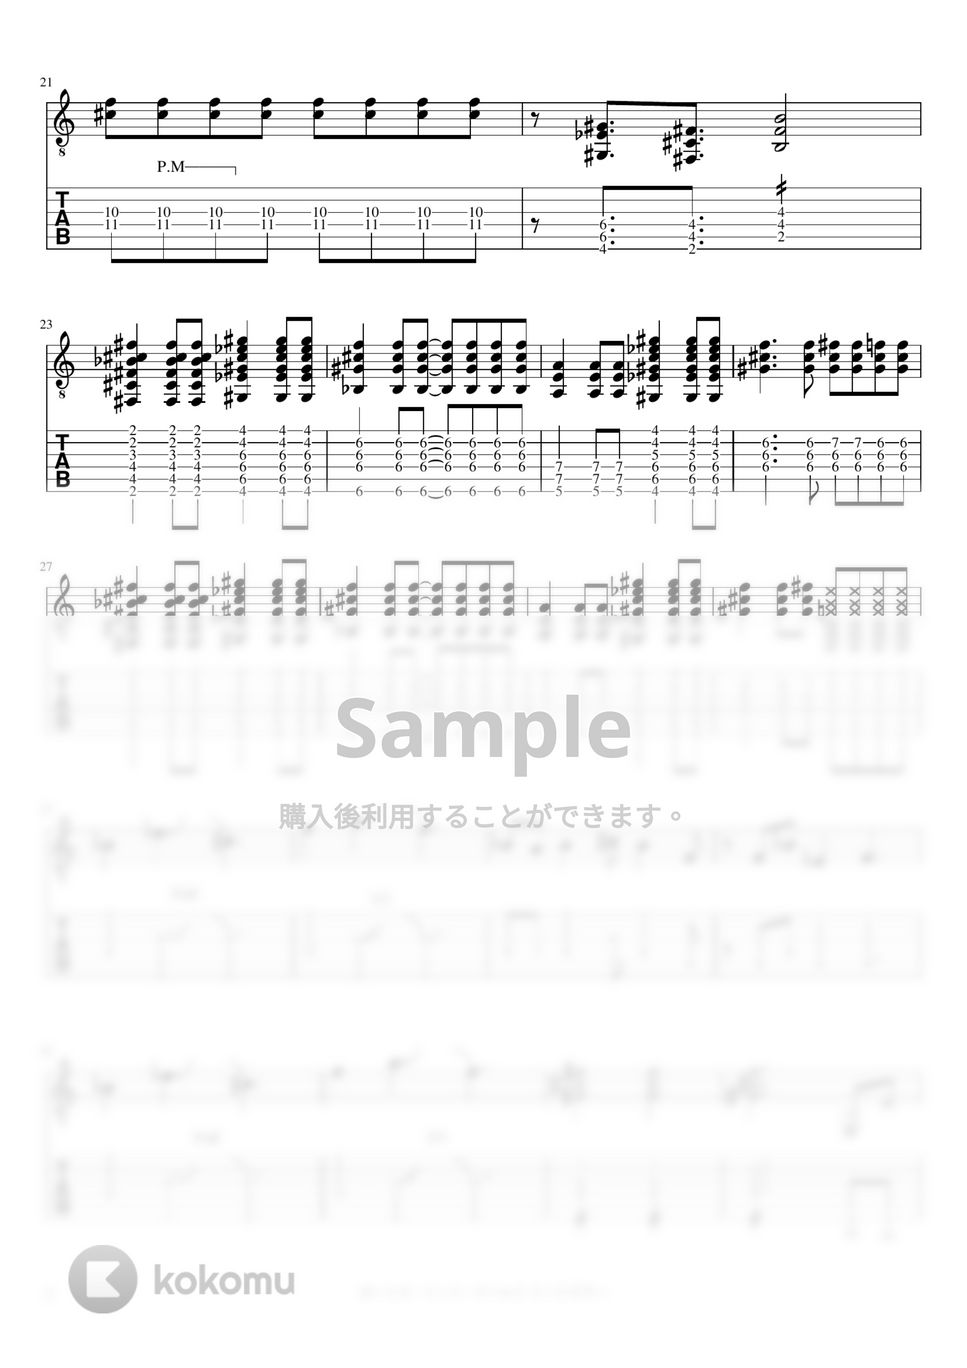 マカロニえんぴつ - ボーイズ・ミーツ・ワールド (リードギター) by J-ROCKチャンネル